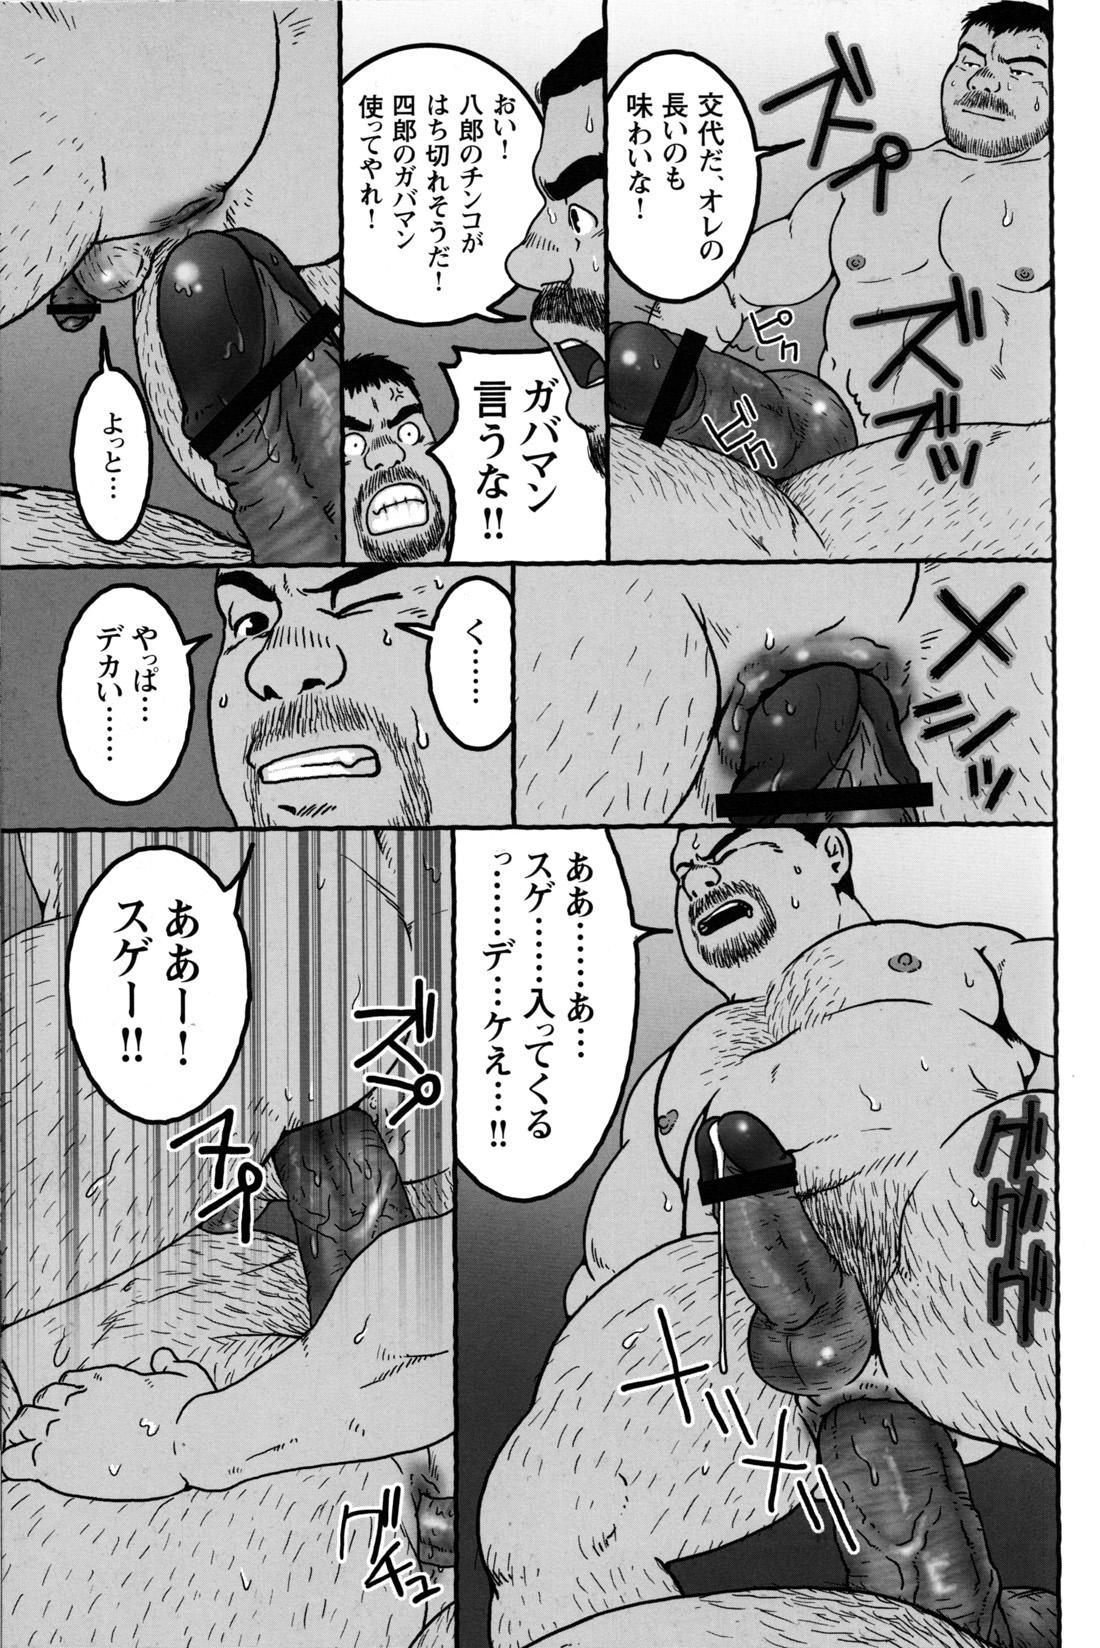 Comic G-men Gaho No.09 Gacchibi Zeme 141